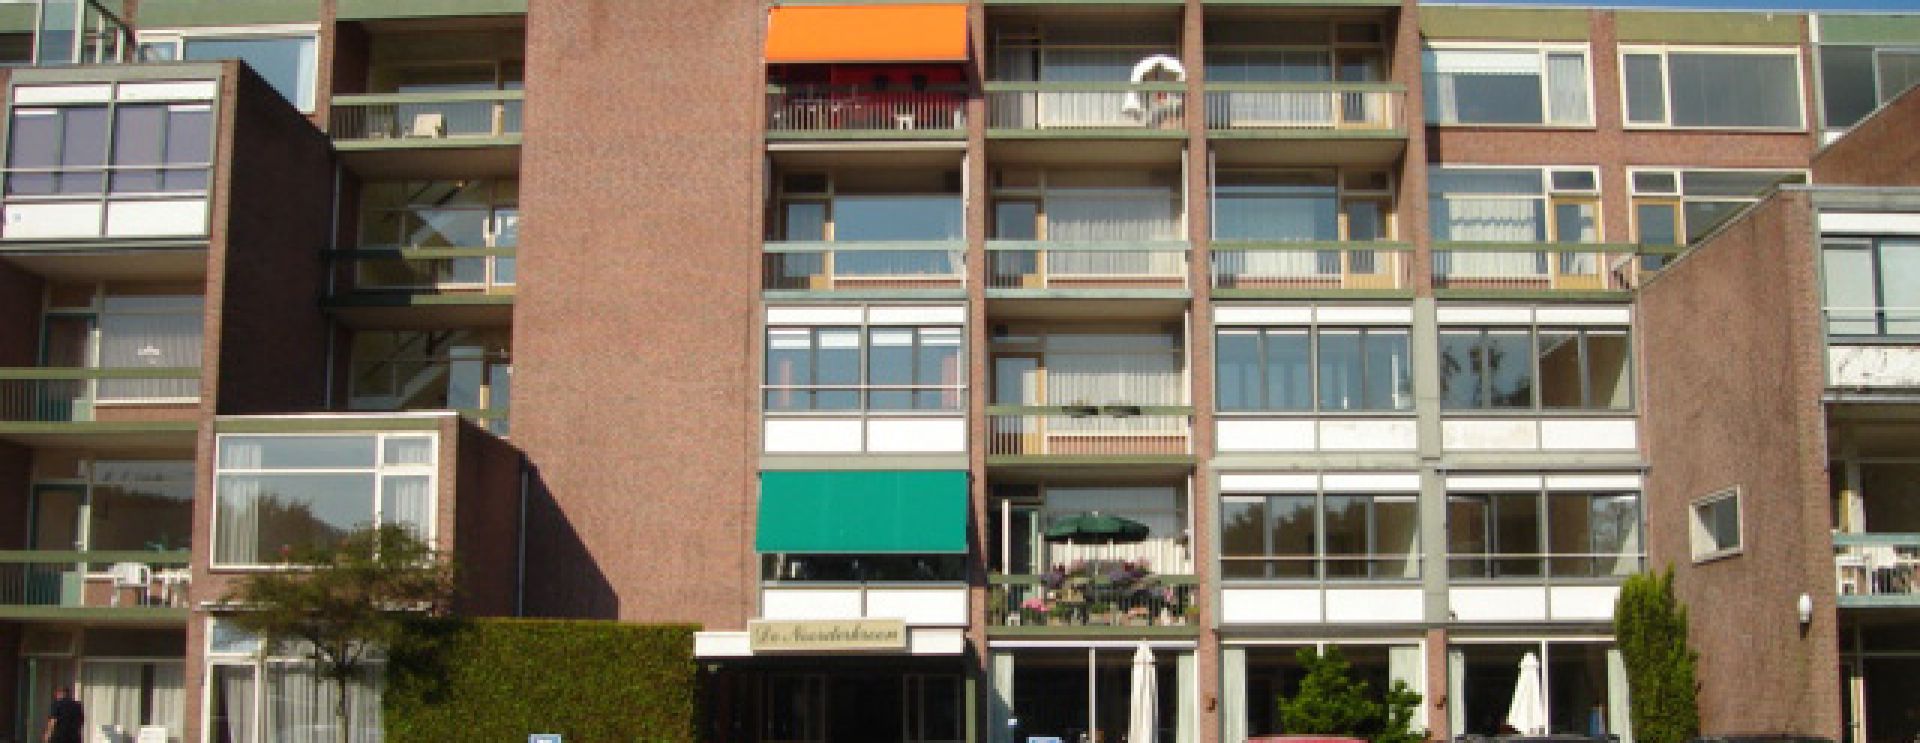 Tijdelijke huisvesting statushouders in De Noorderkroon in Roden / update